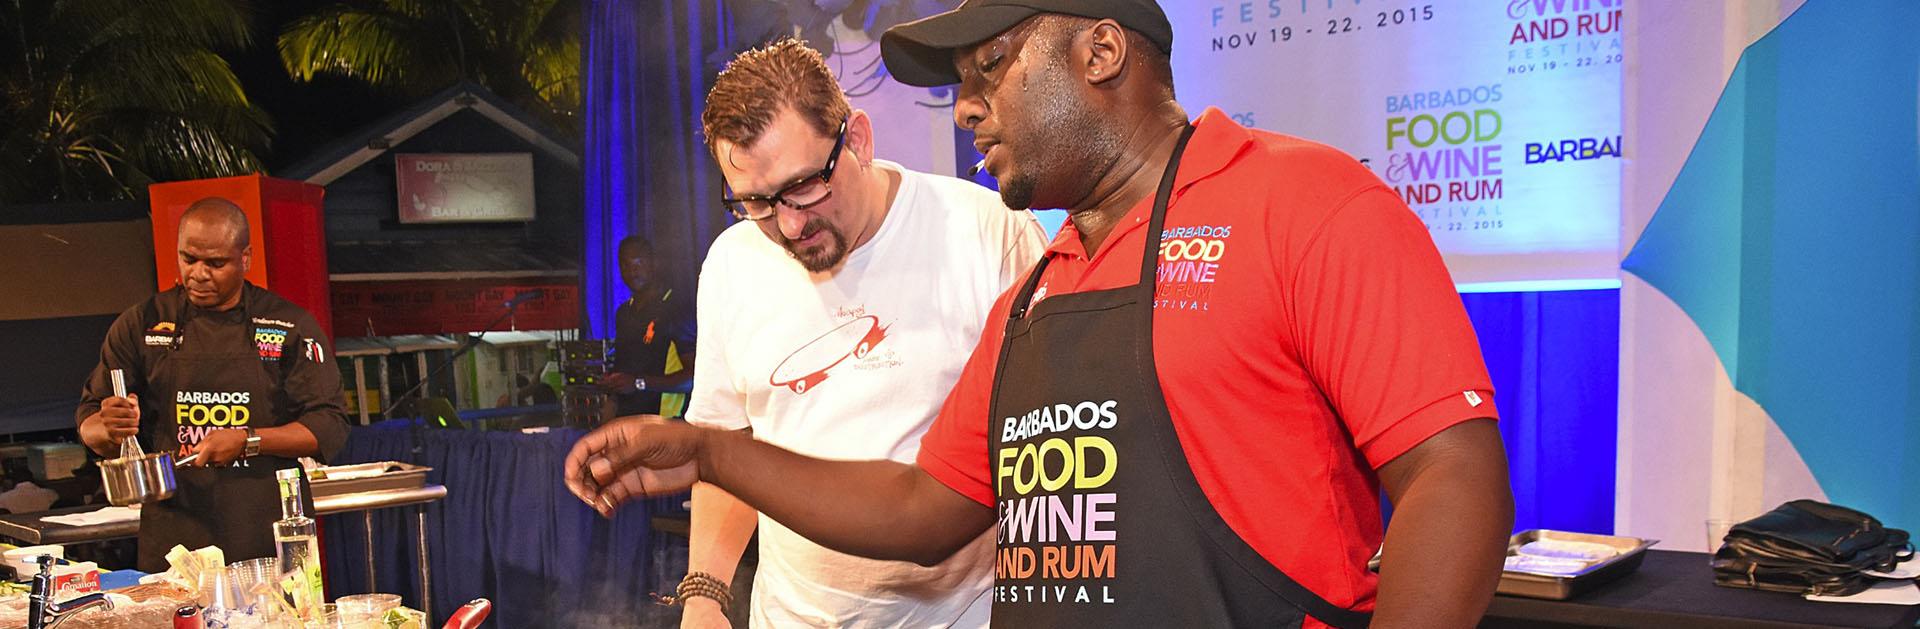 Explore Barbados Food & Rum Festival Visit Barbados